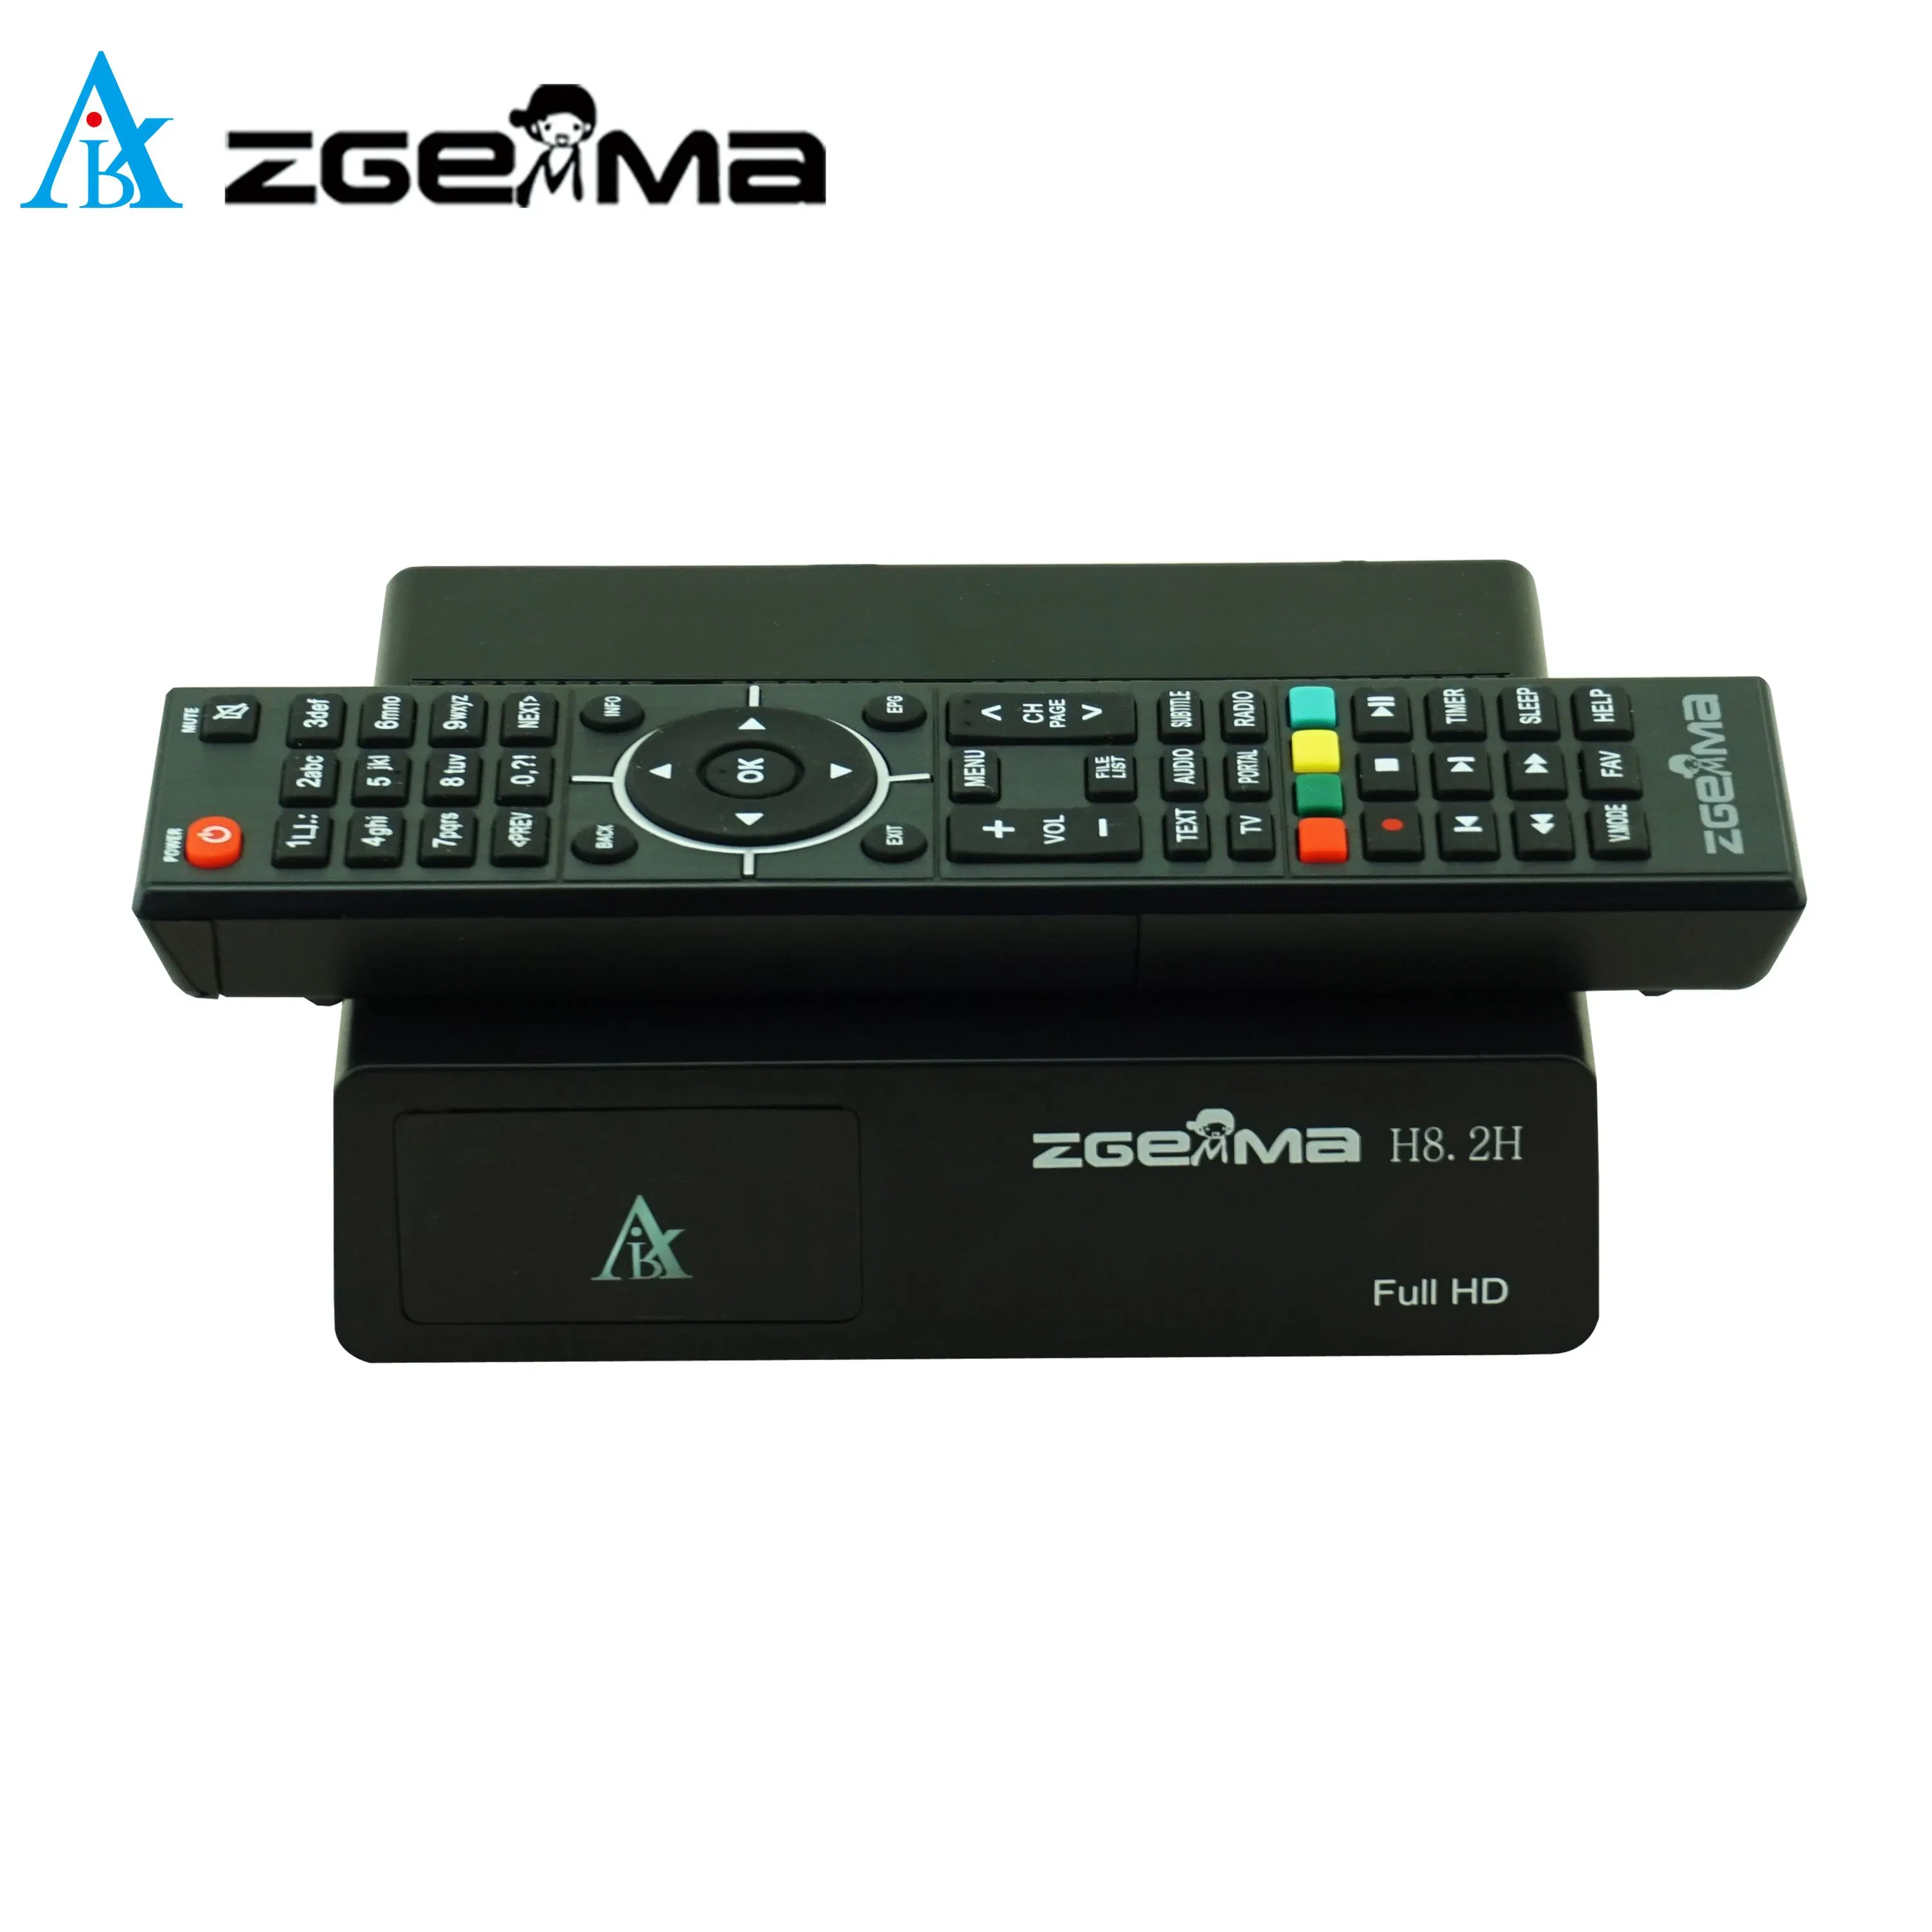 Zgemma H8.2h TV via satélite - Receptor de Alta Definição 1080p de resolução, sintonizador DVB-S2X + DVB-T2/C Tuner